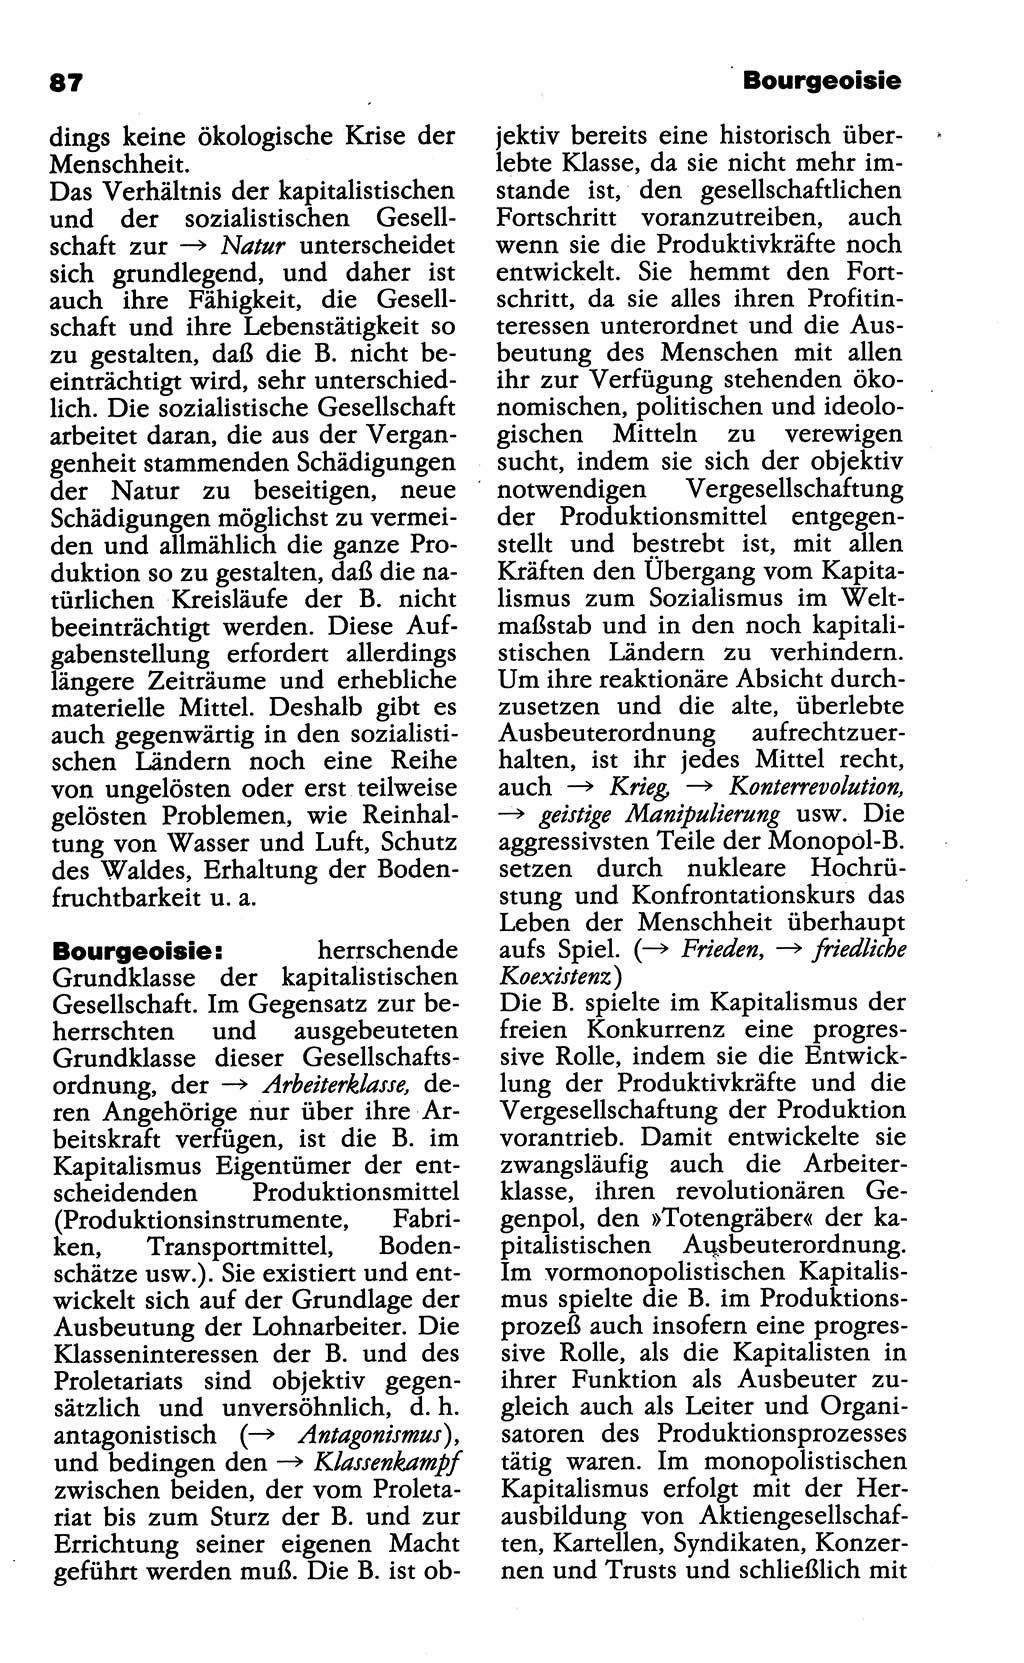 Wörterbuch der marxistisch-leninistischen Philosophie [Deutsche Demokratische Republik (DDR)] 1985, Seite 87 (Wb. ML Phil. DDR 1985, S. 87)